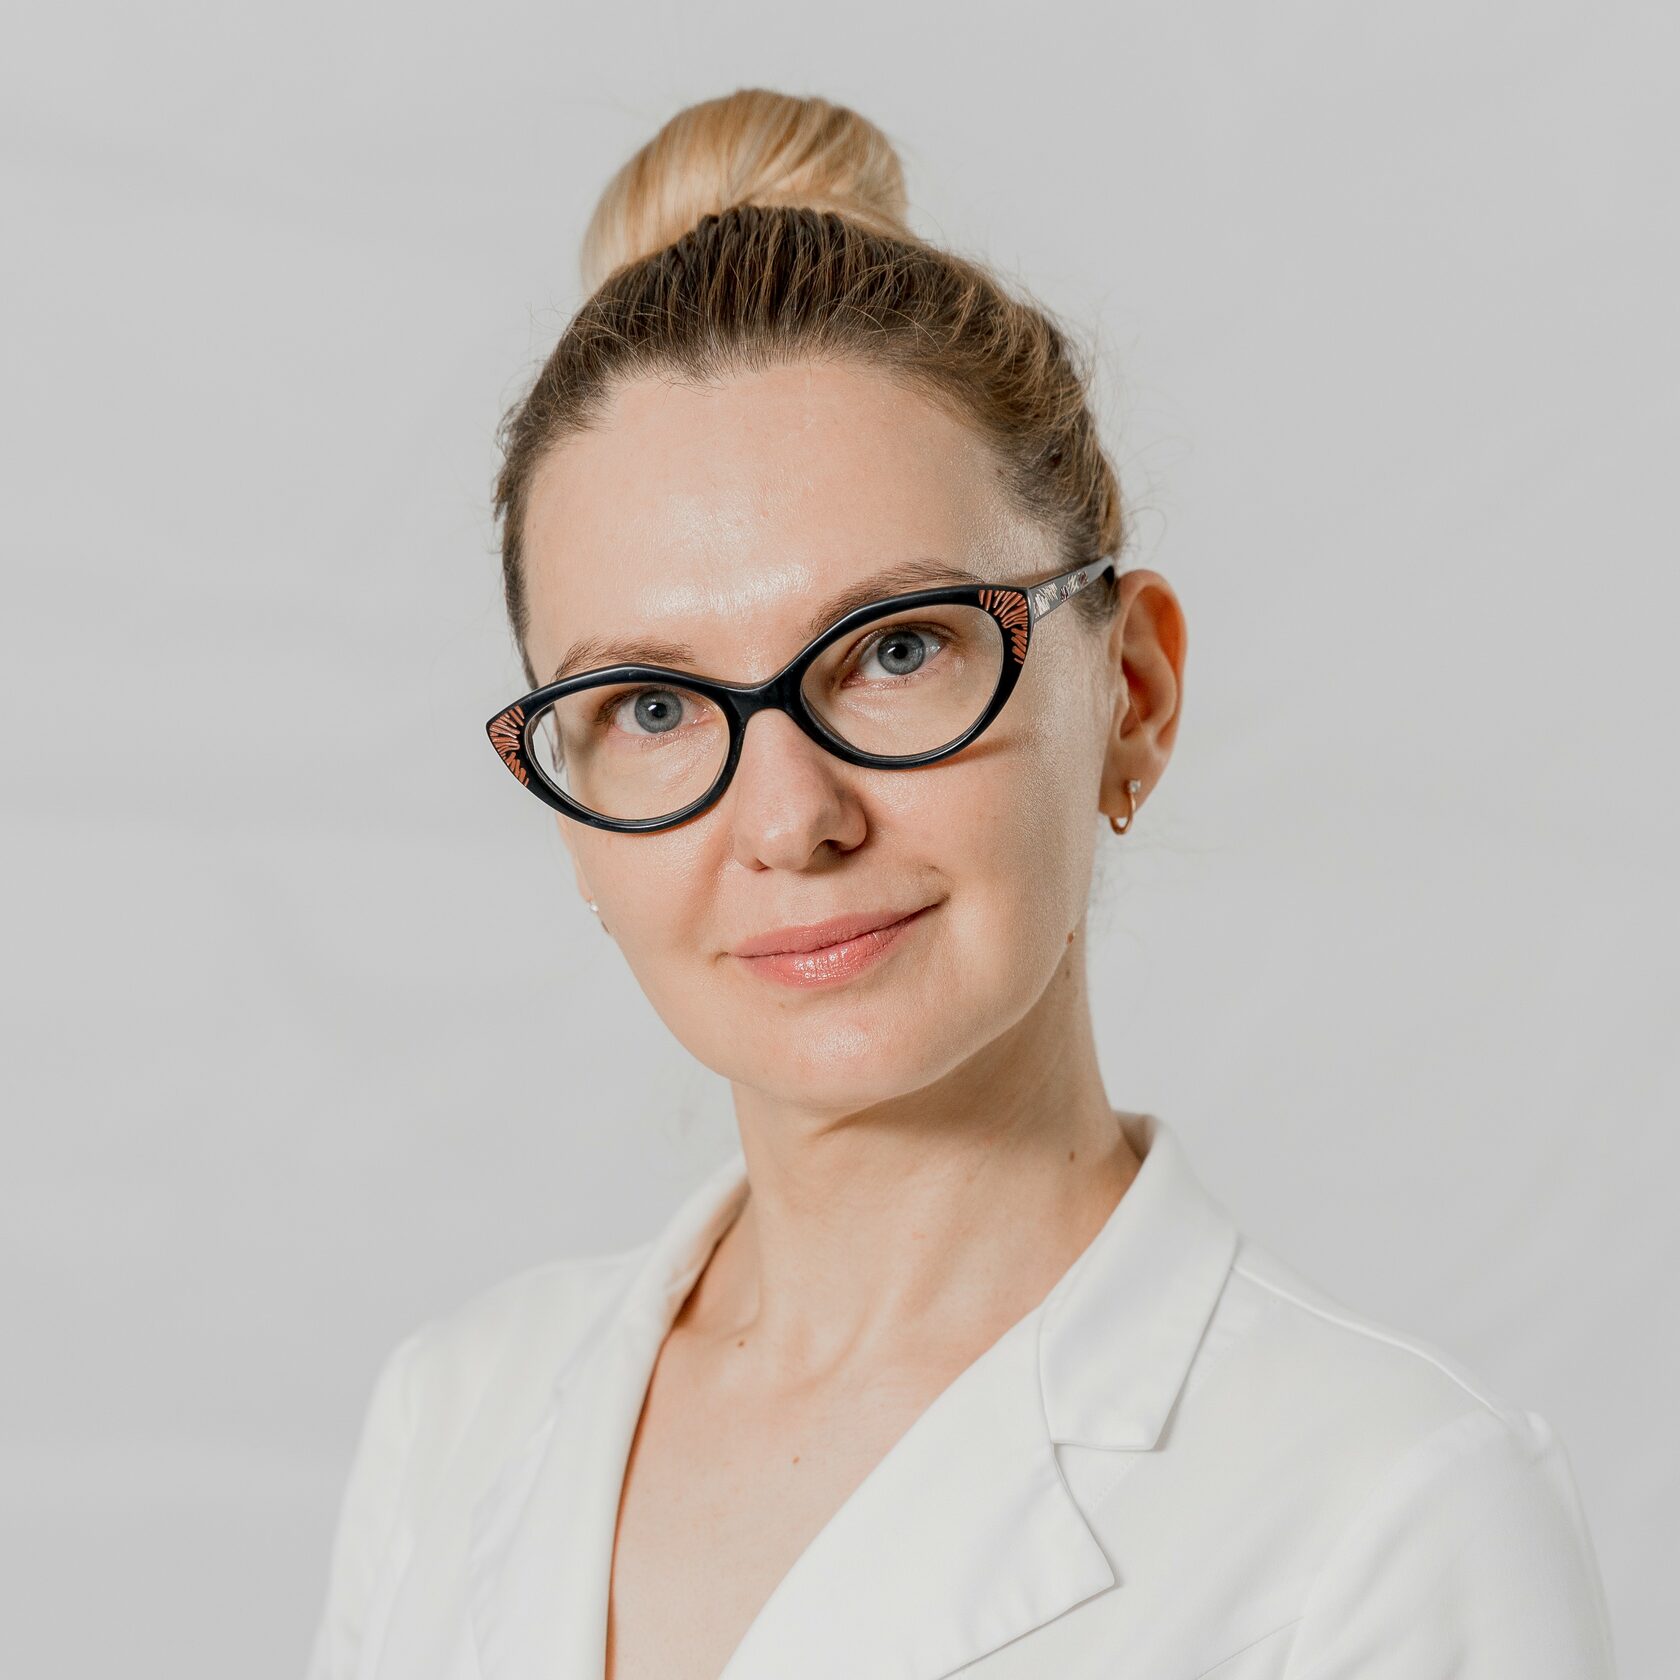 Анна Матюшенко, врач дерматолог, косметолог